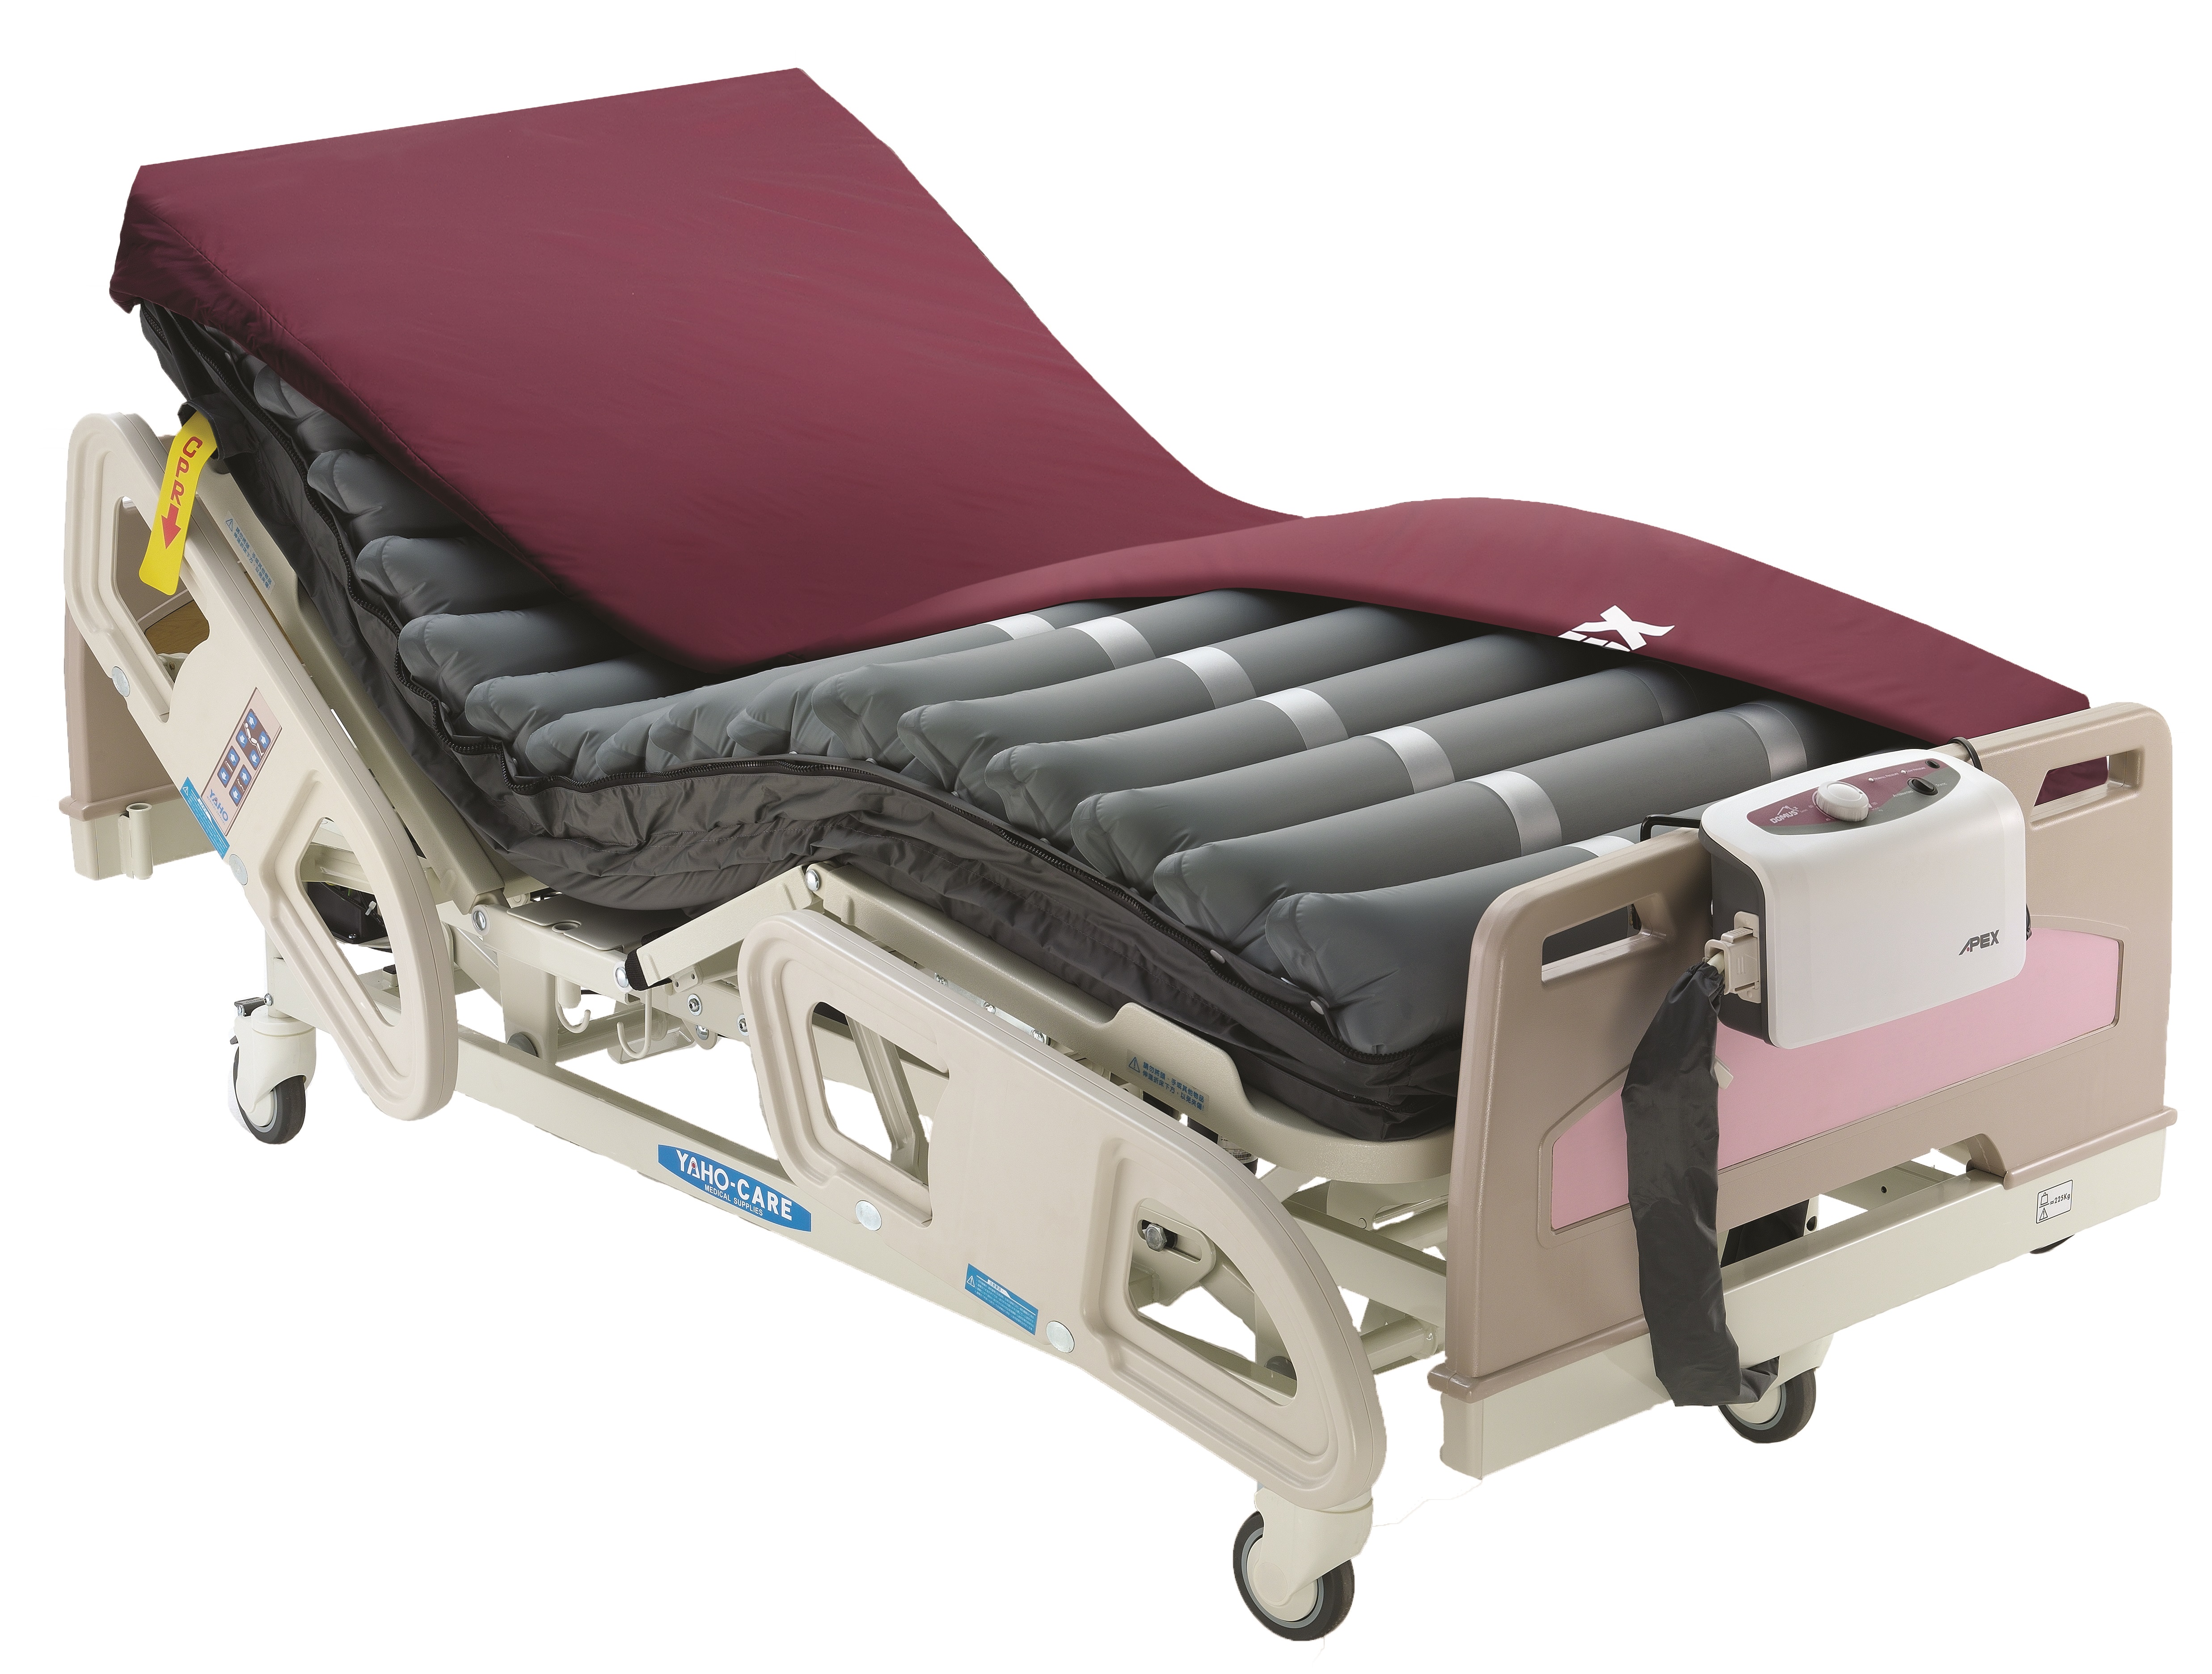 Domus 3 - Medical Bed - ES Wellell